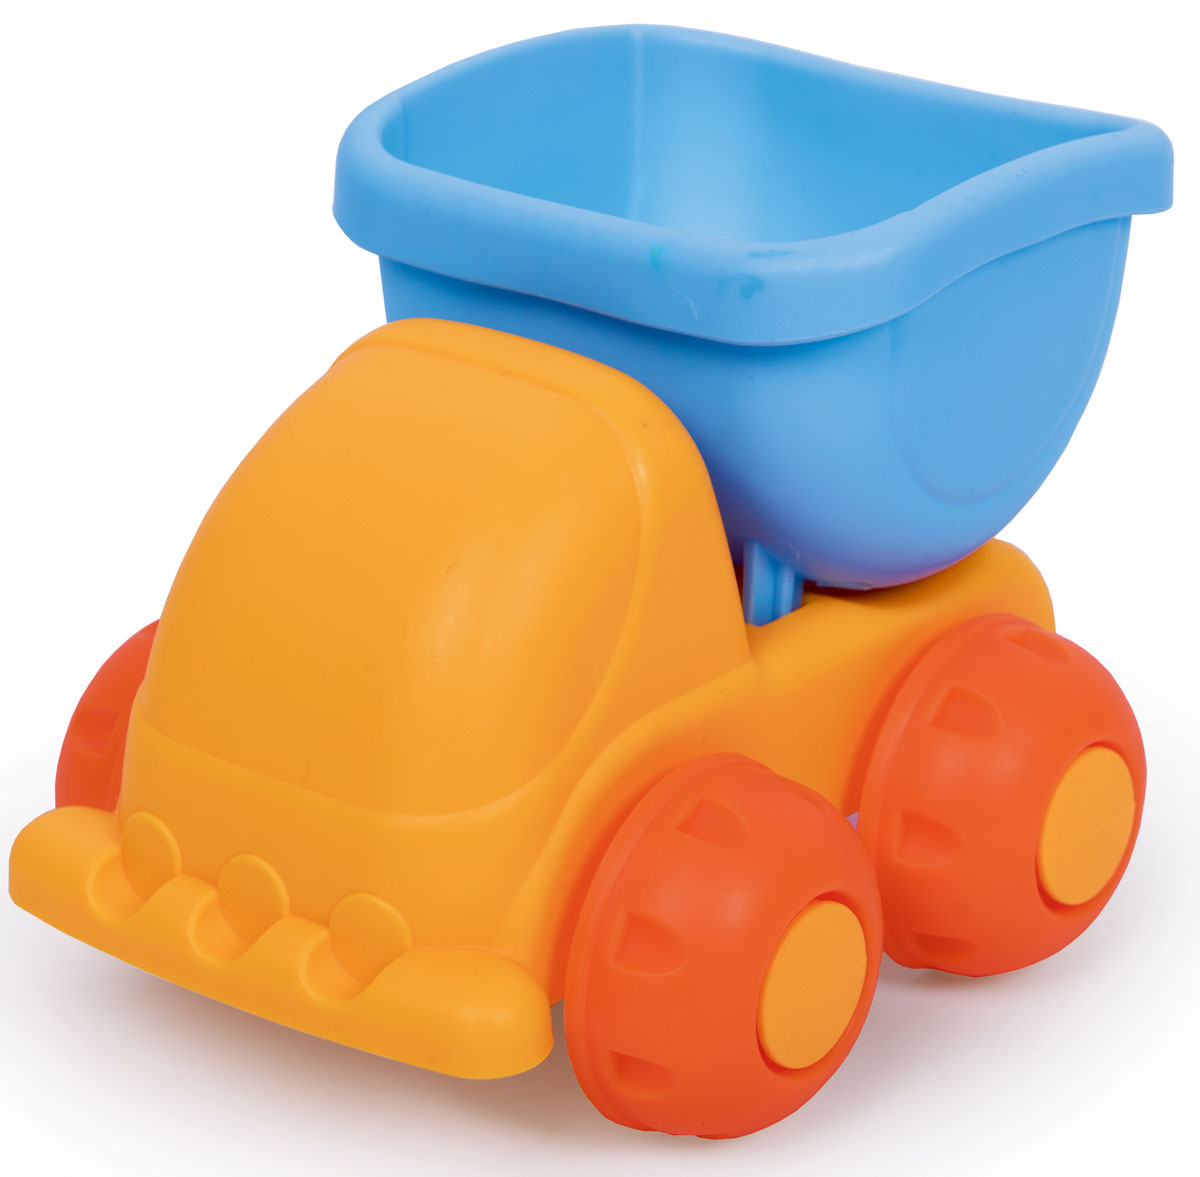 фото ЯиГрушка Игрушка для песочницы Машинка цвет оранжевый, голубой